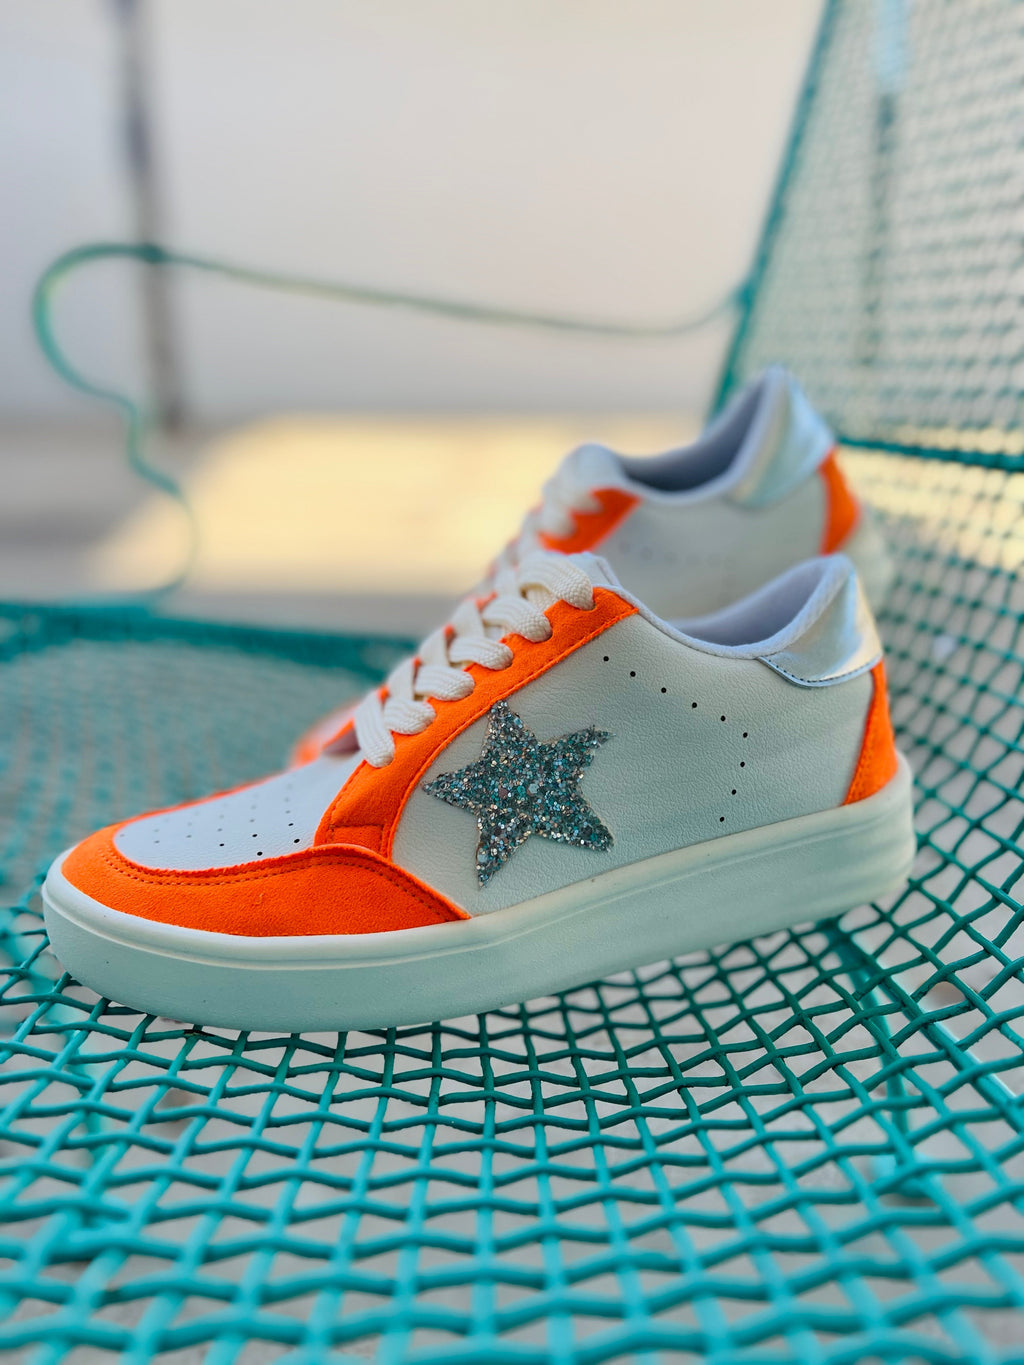 Orange Game Day Sneakers | gussieduponline